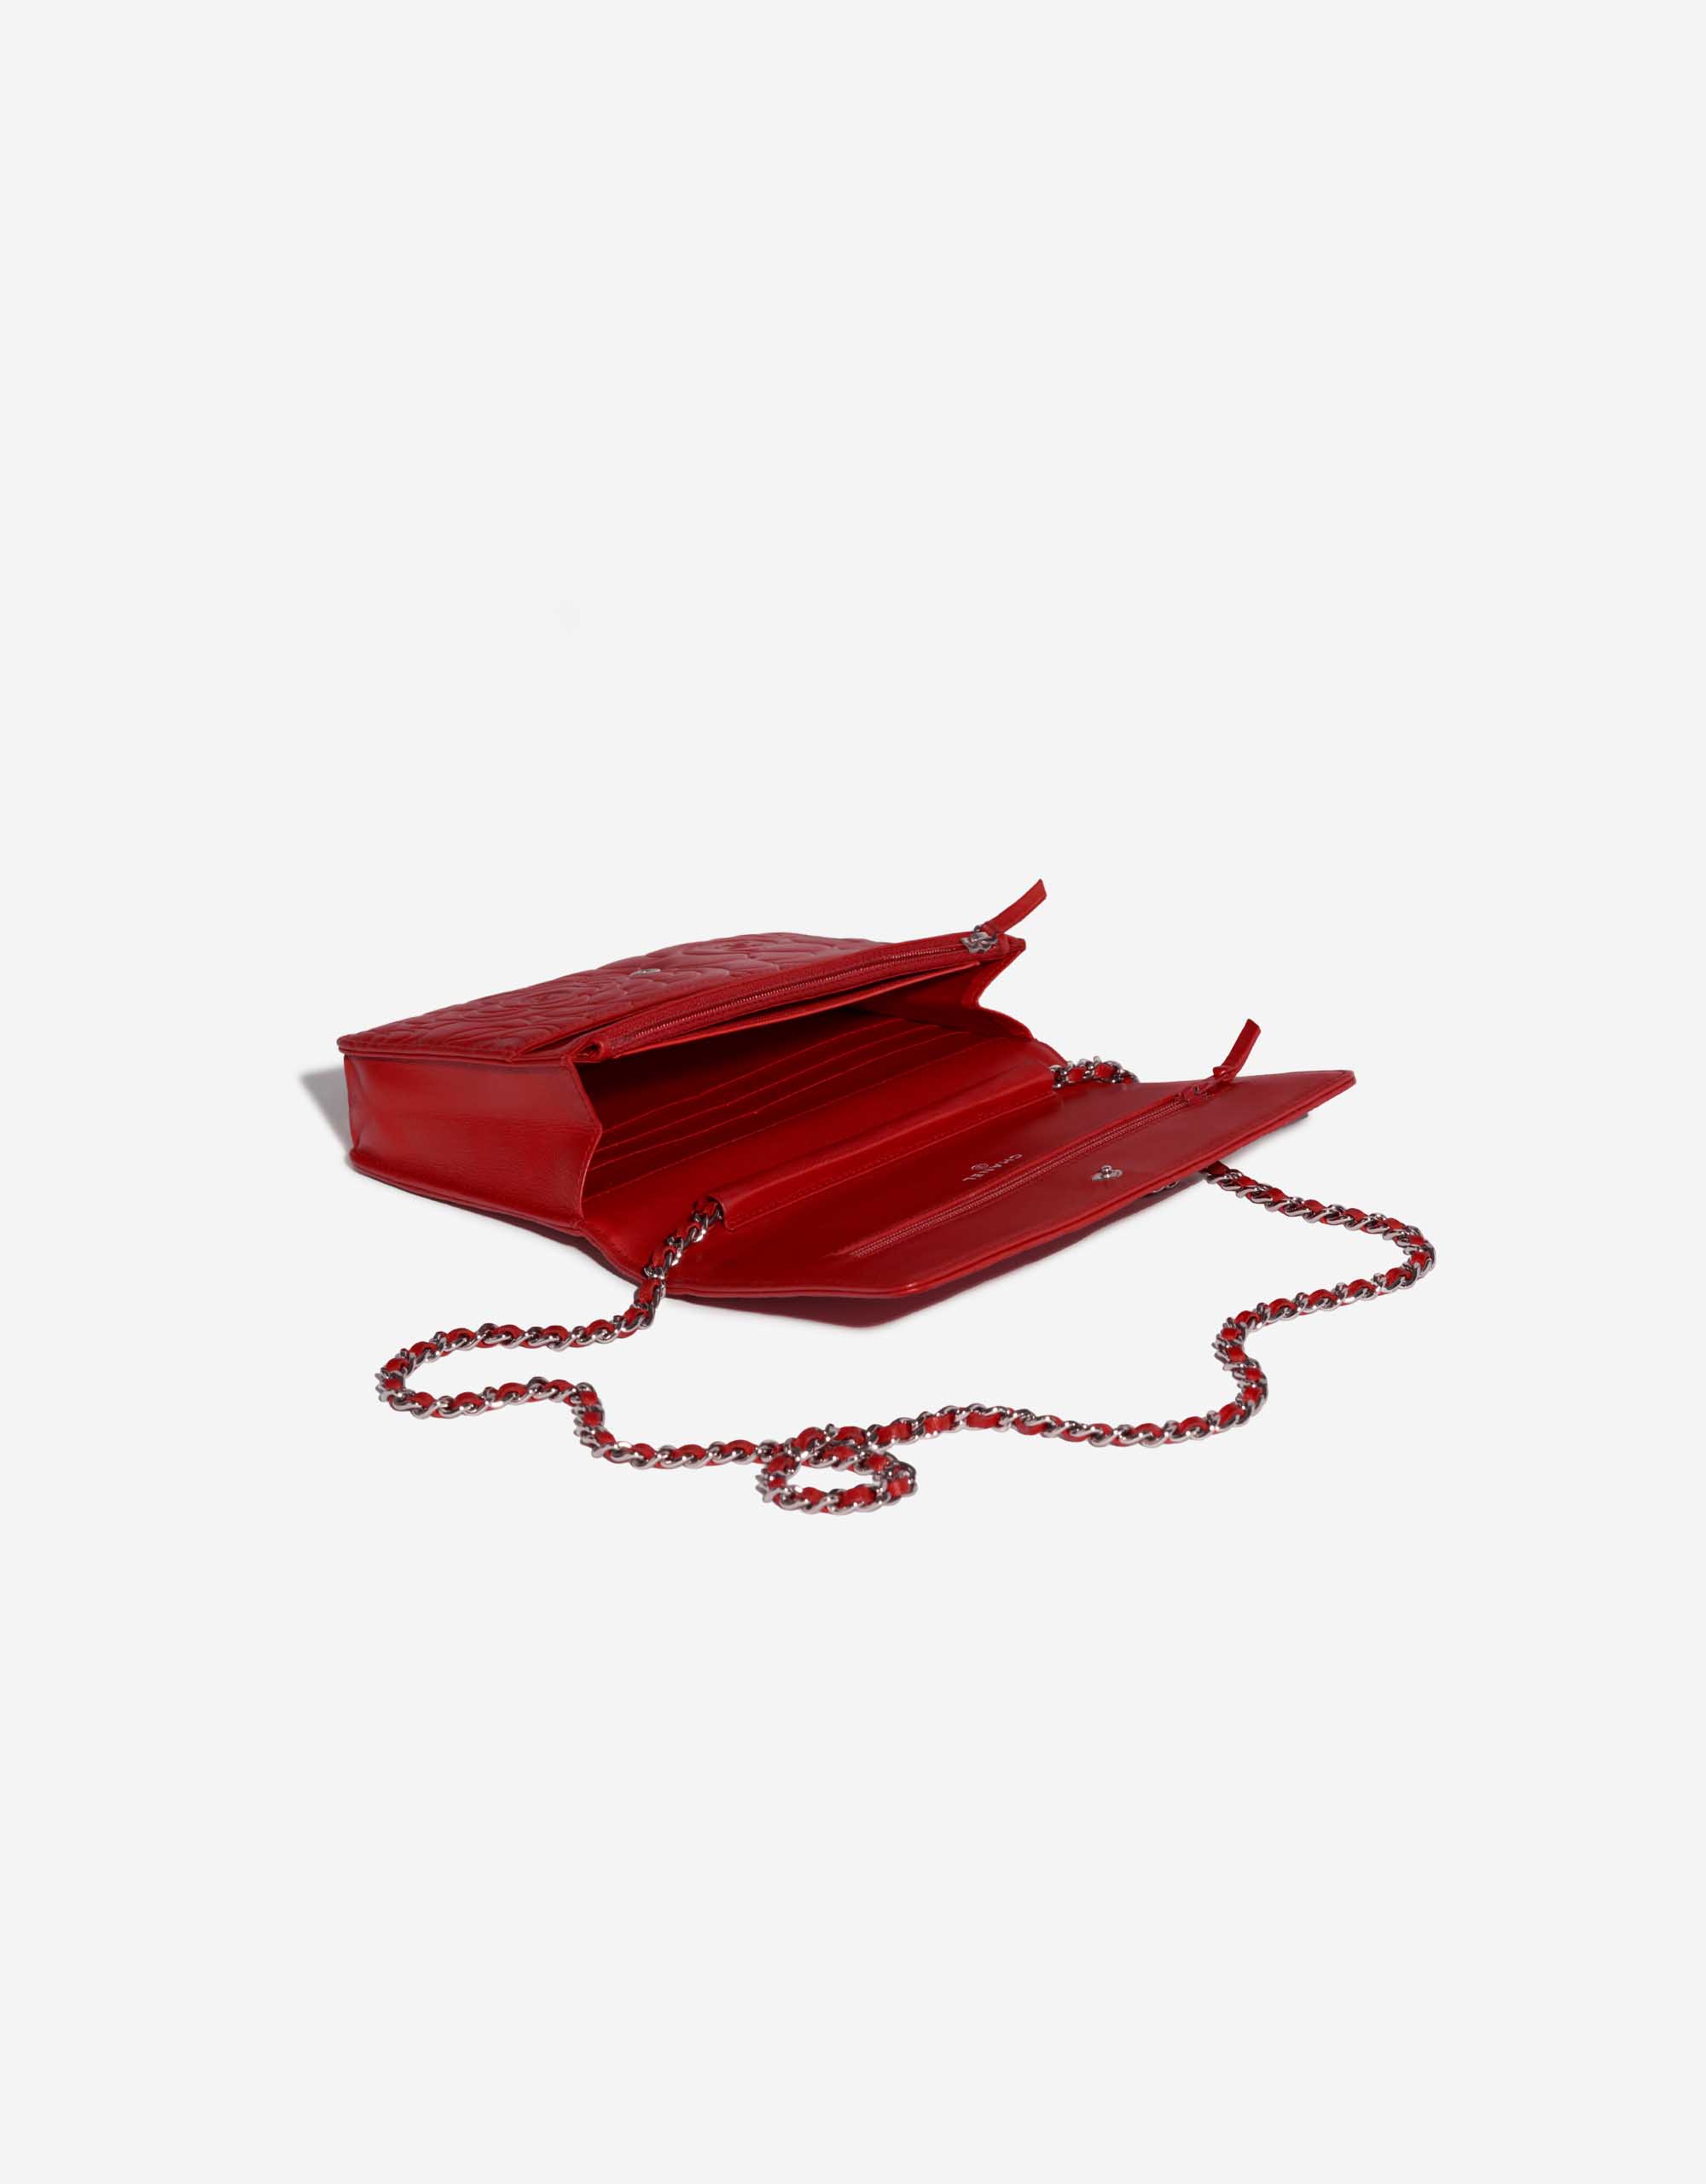 Sac Chanel d'occasion WOC Agneau Camélia Rouge Rouge Intérieur | Vendez votre sac de créateur sur Saclab.com